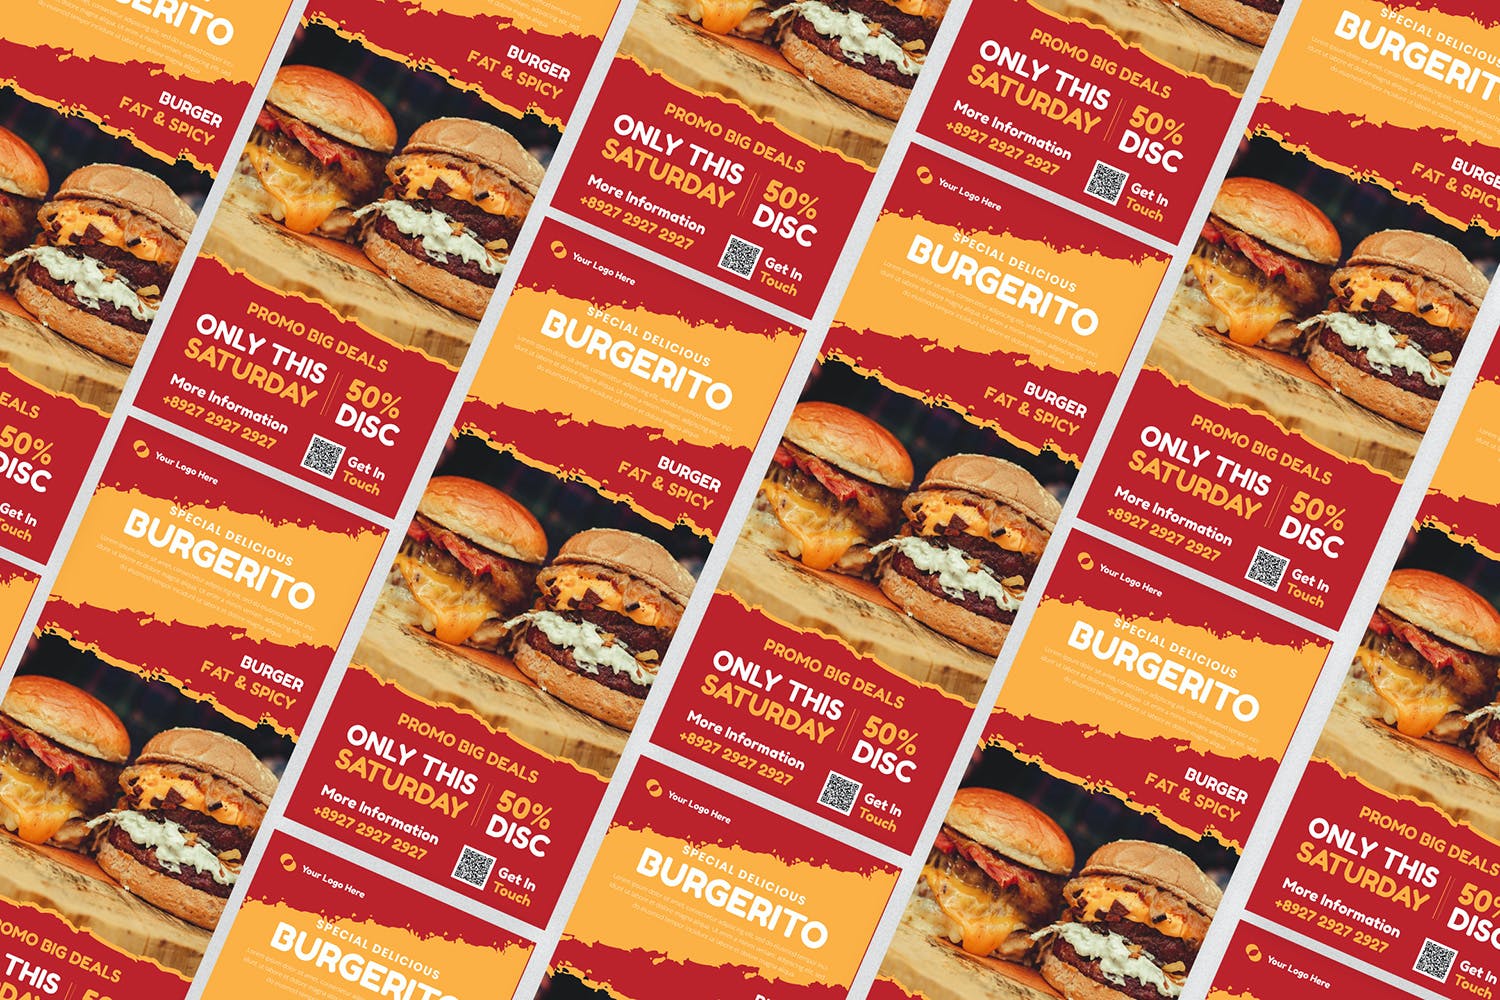 汉堡促销易拉宝Banner设计模板 Burgerito | Roll Up Banner